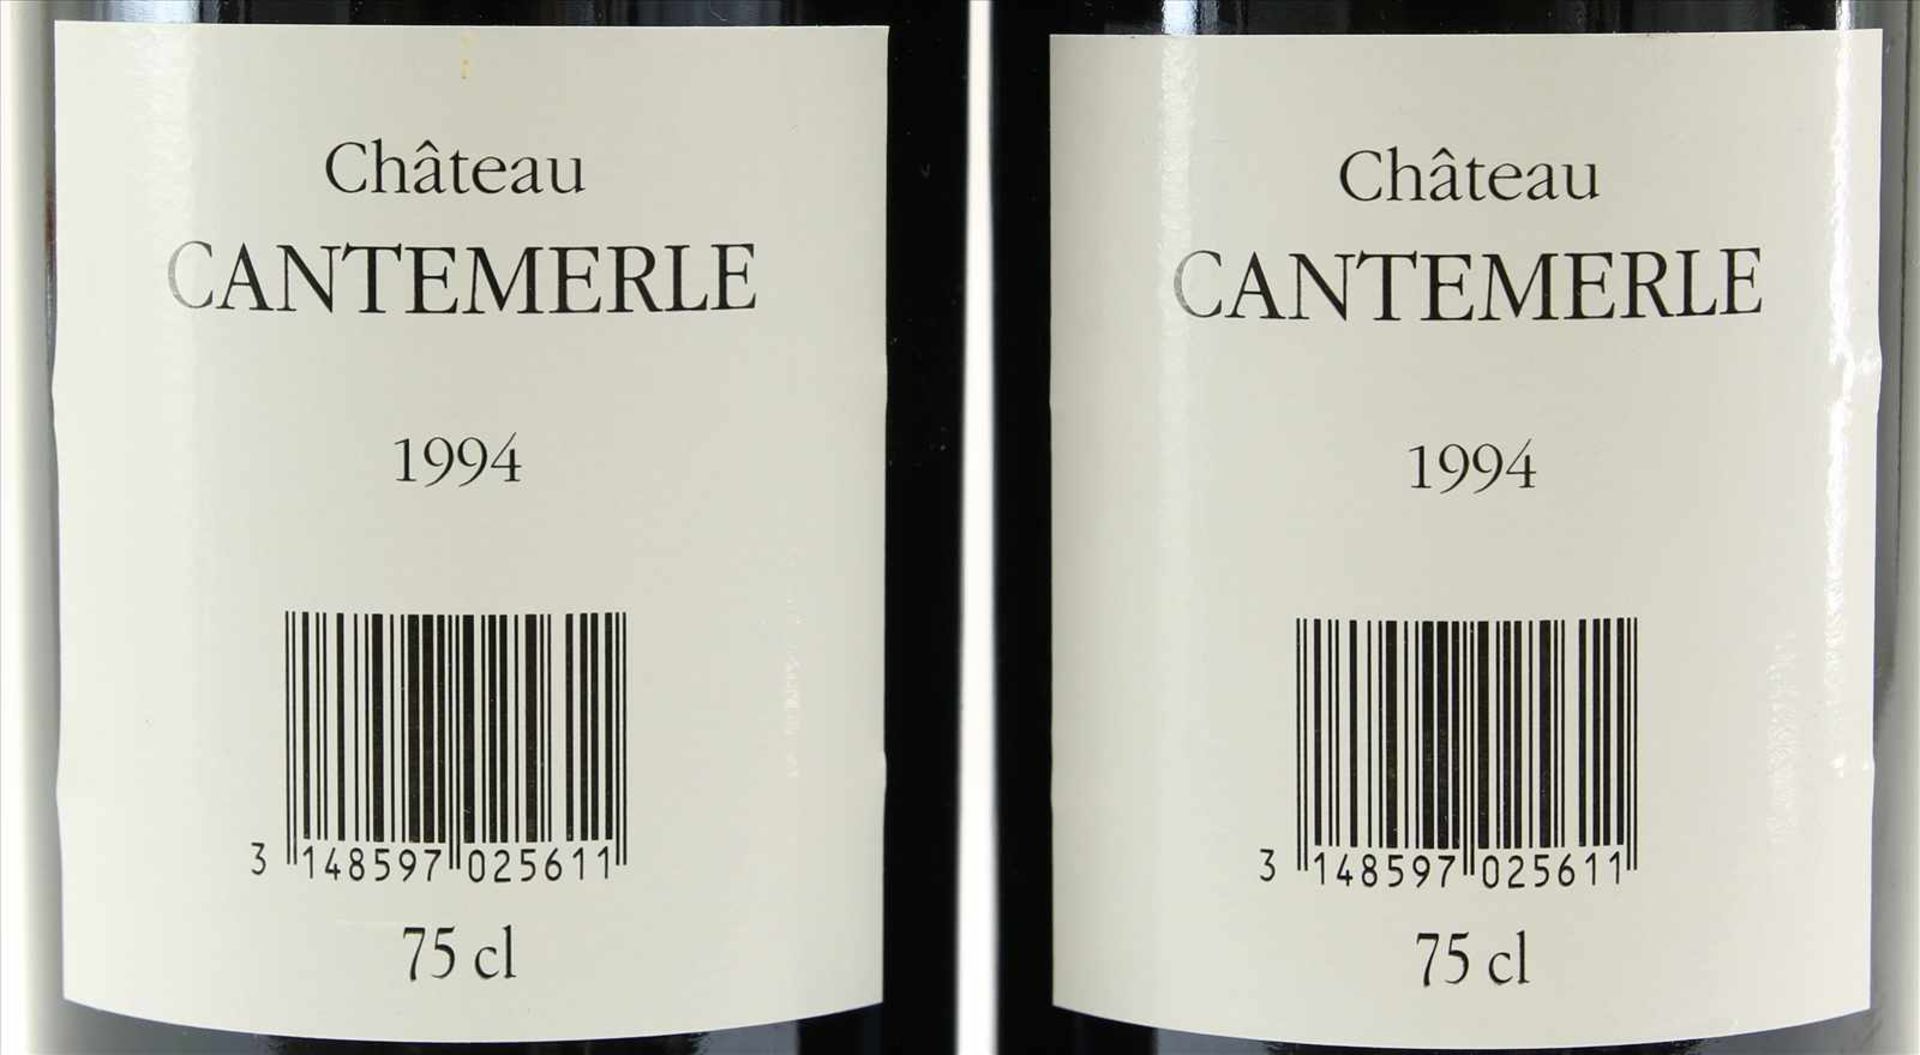 2 Flaschen Chateau Cantemerle 1994Grand Cru Classé. Haut-Medoc. 2 x 0,75 Liter Flasche. Füllstand - Bild 3 aus 4